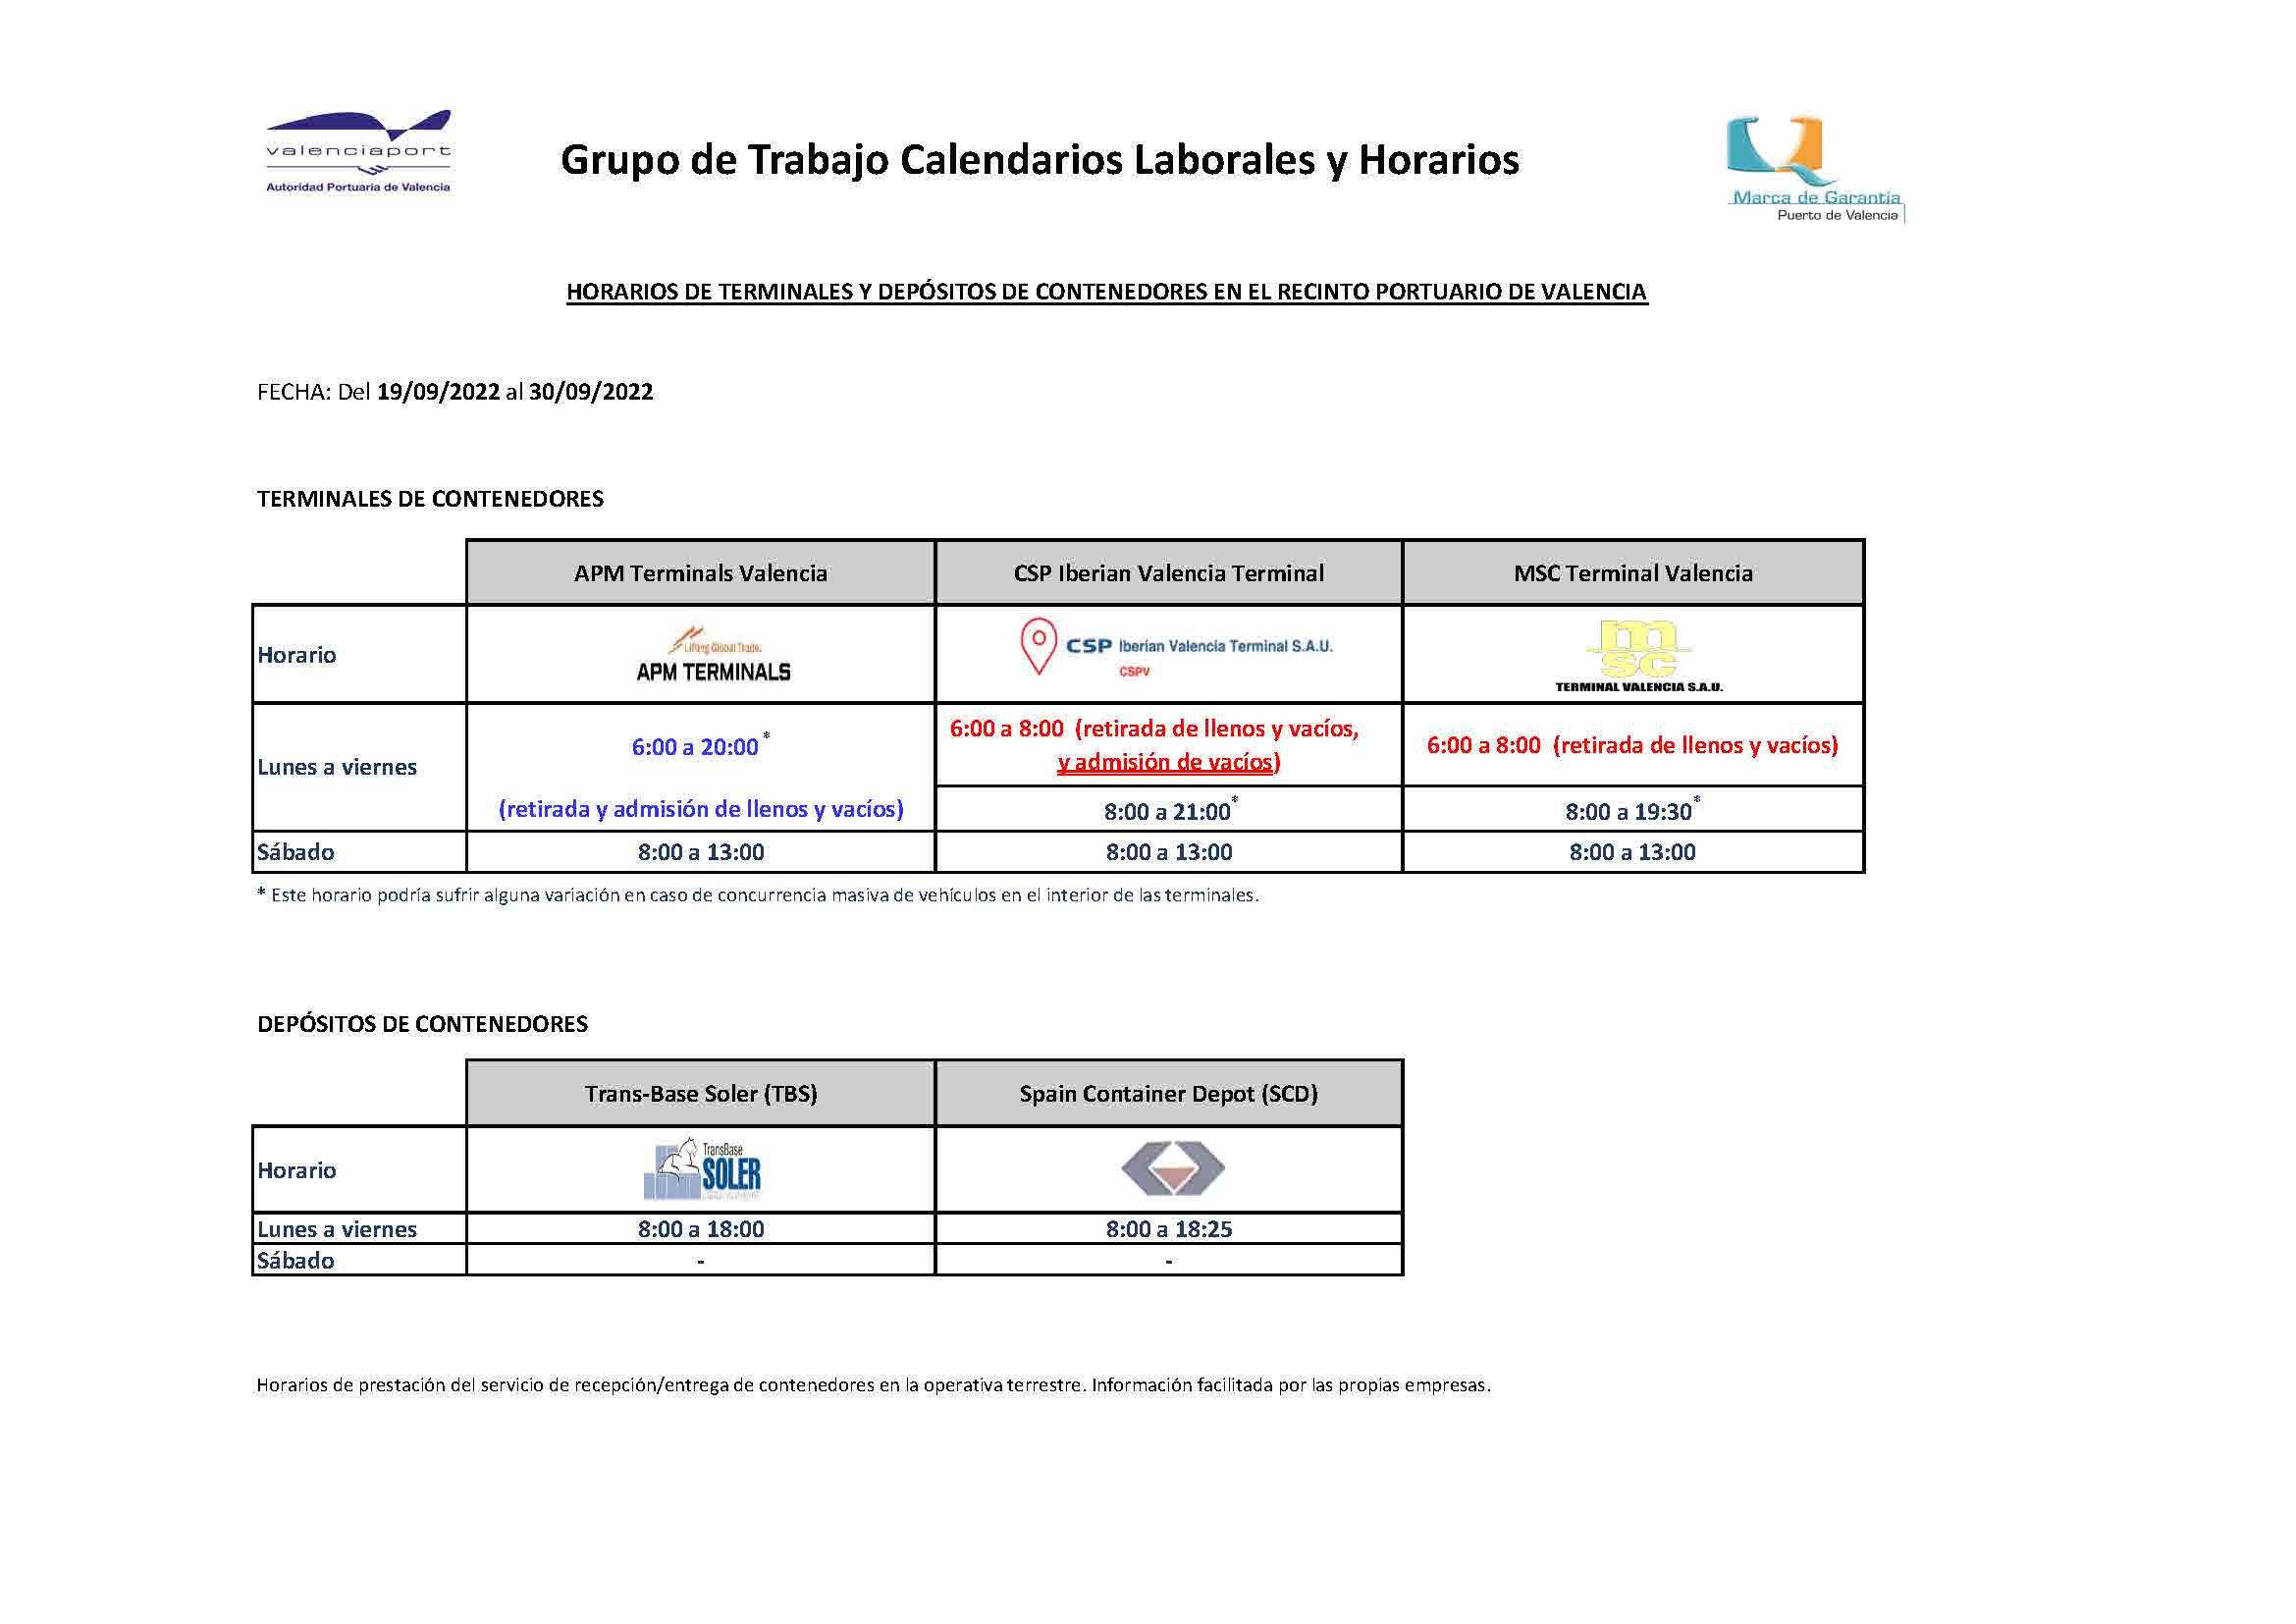 Horarios retirada/admisión en la operativa terrestre de terminales y depósitos de contenedores puerto de Valencia